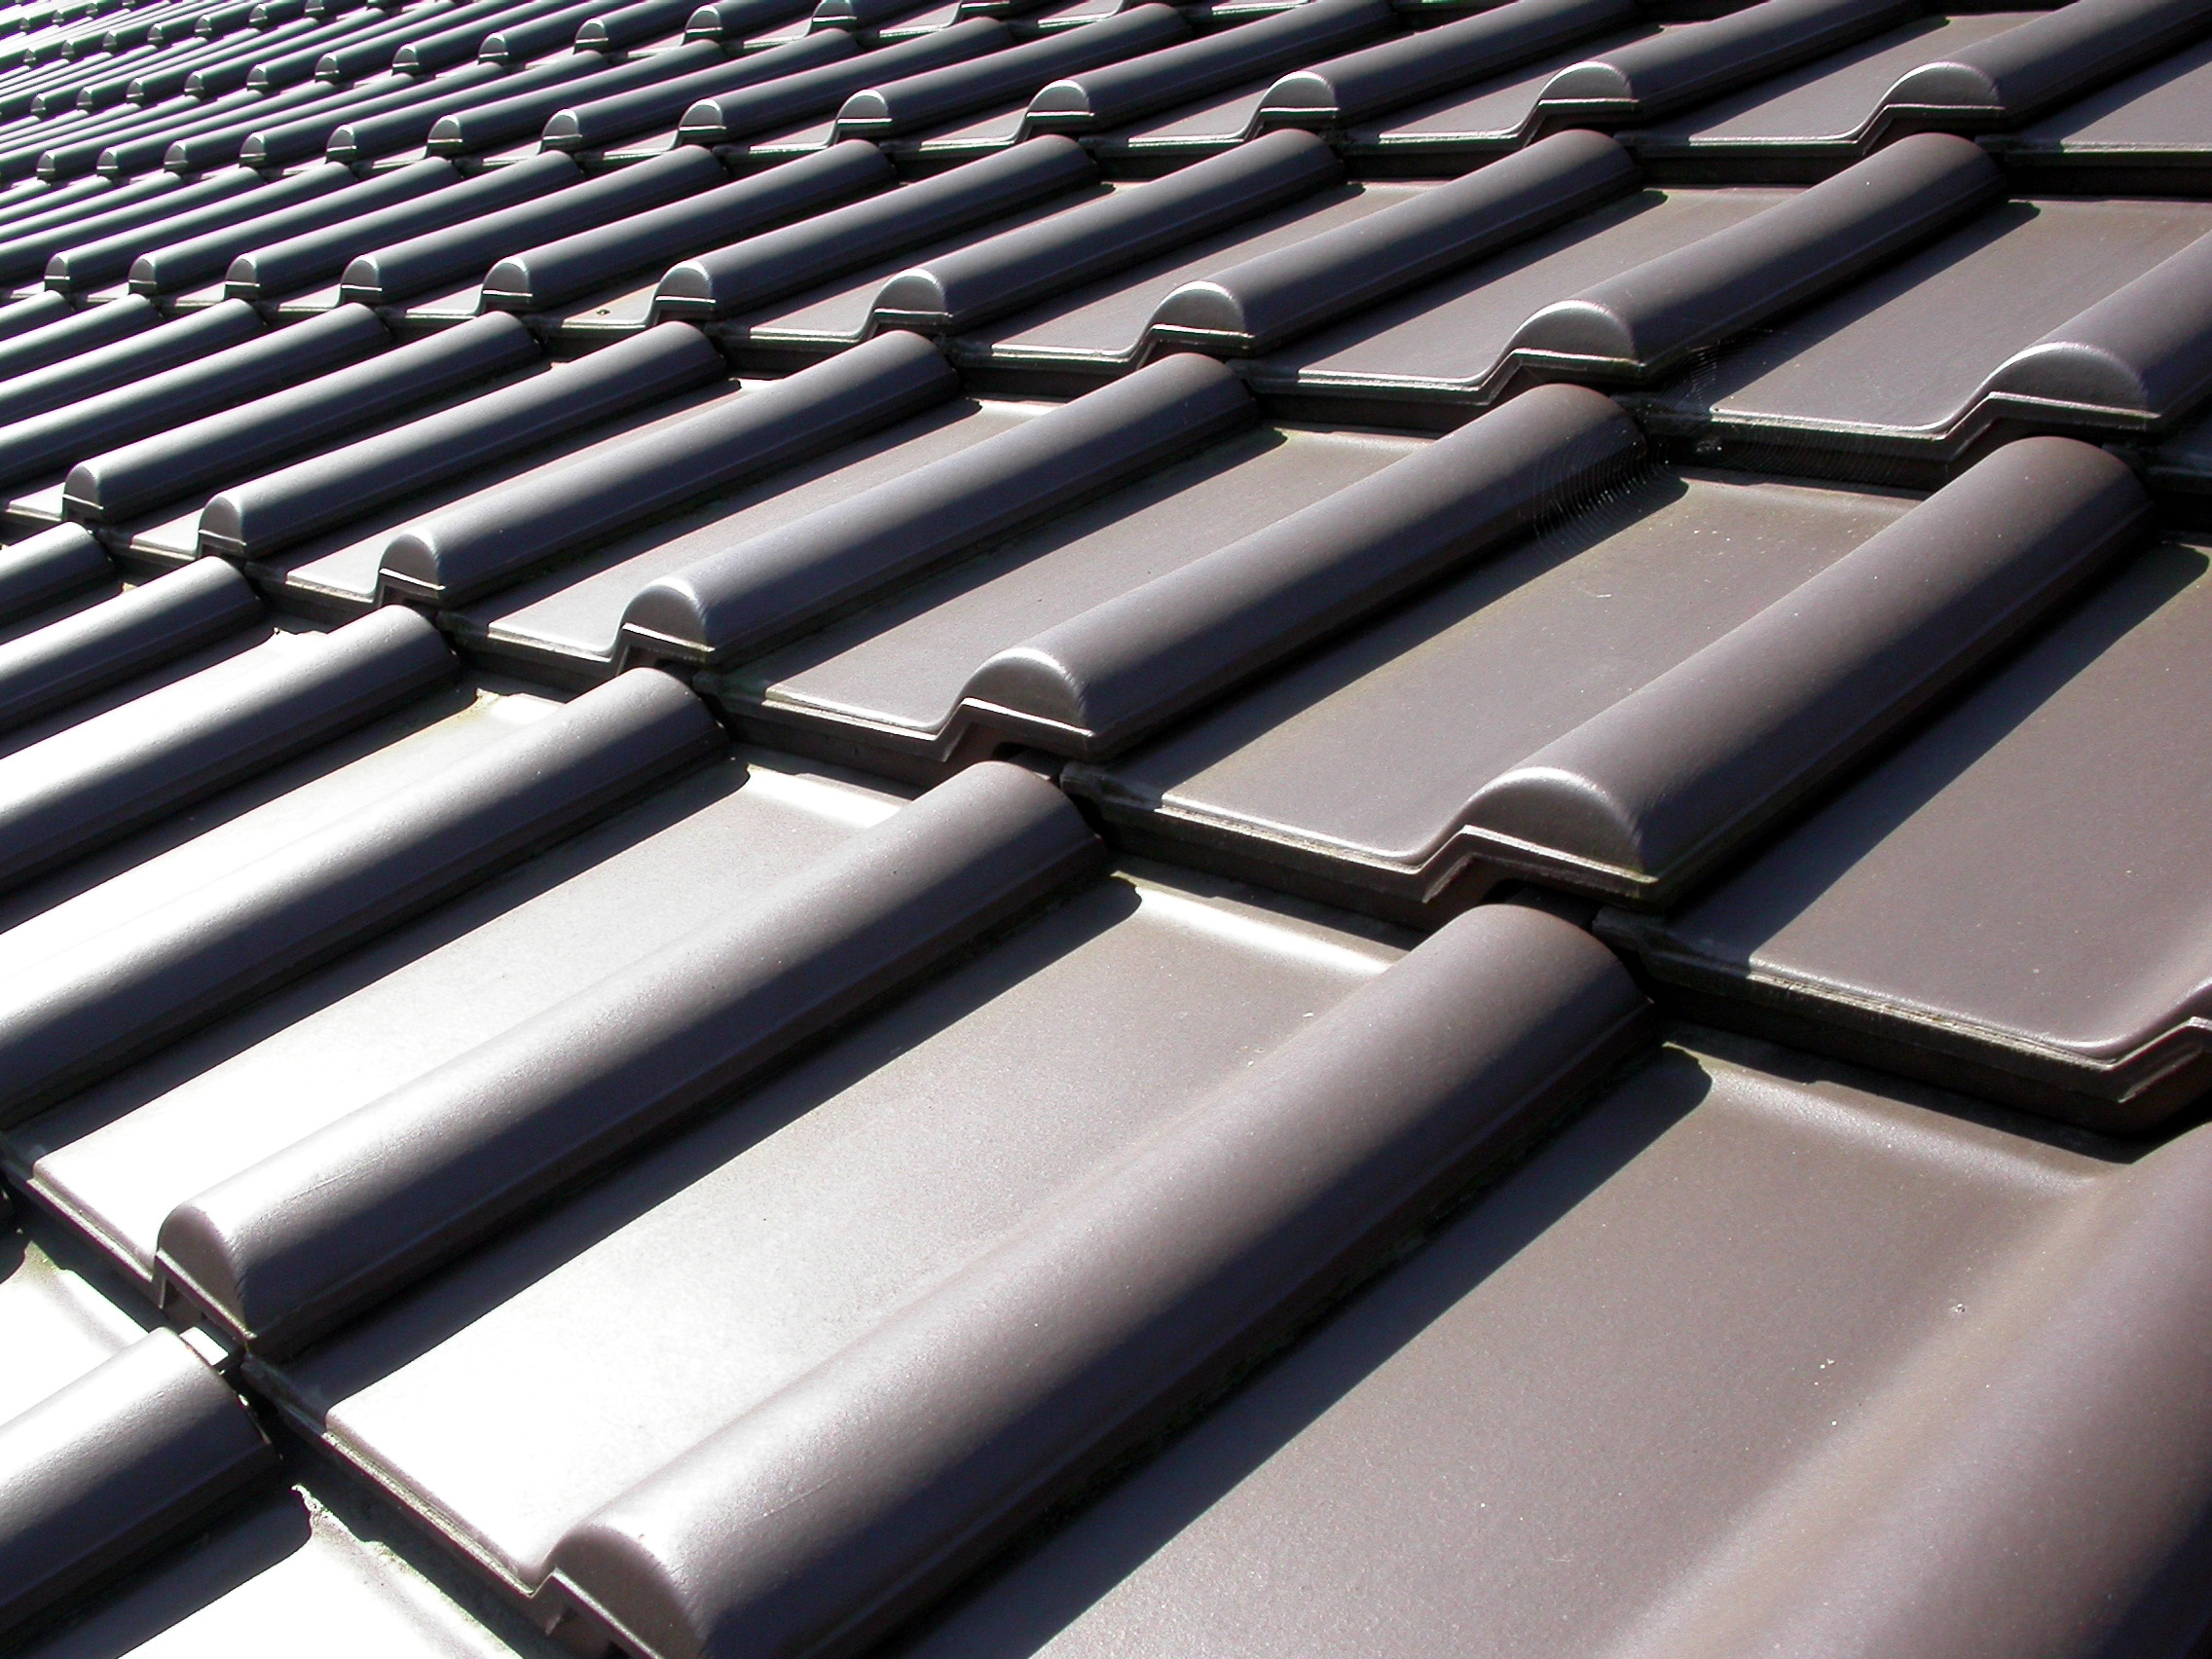  Wir decken Ihr Dach ganz nach Ihren Wünschen, ob Ein- oder Umdeckungen.<br><h7>Foto: Klicker / pixelio.de</h7> 